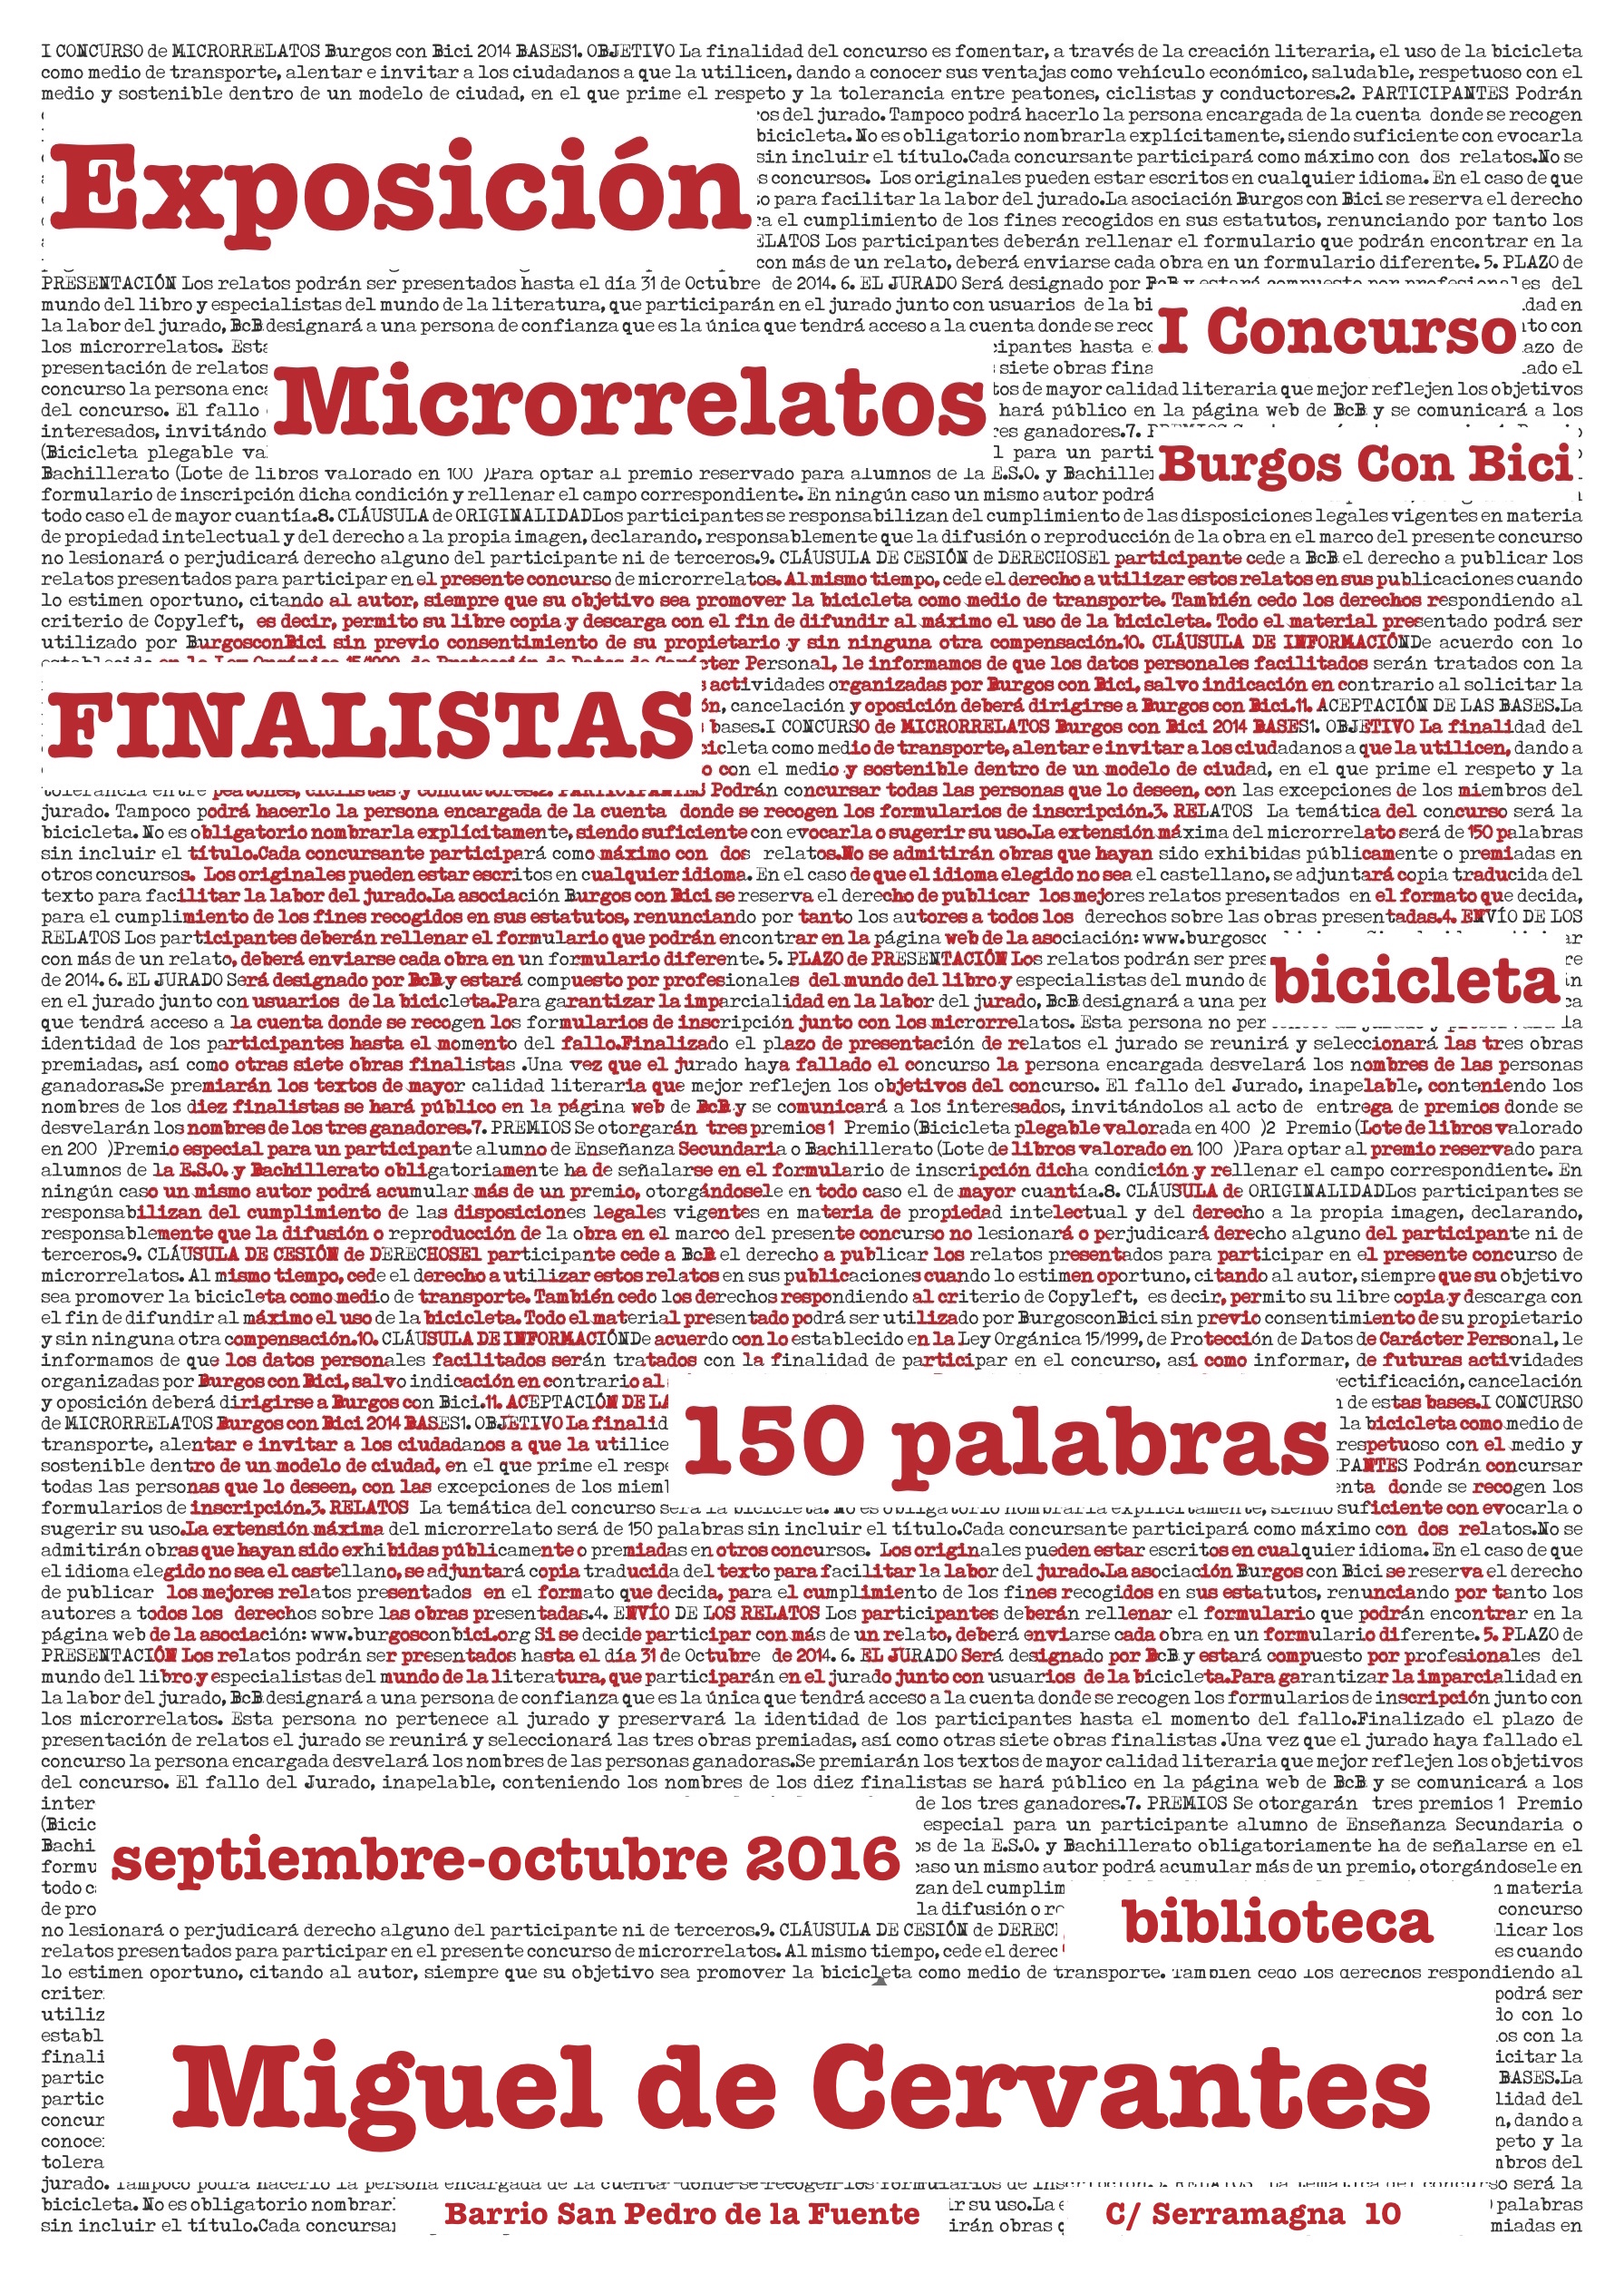 cartel-microrrelatos-exposicion-bibiloteca-cervantes-blanco-y-rojo